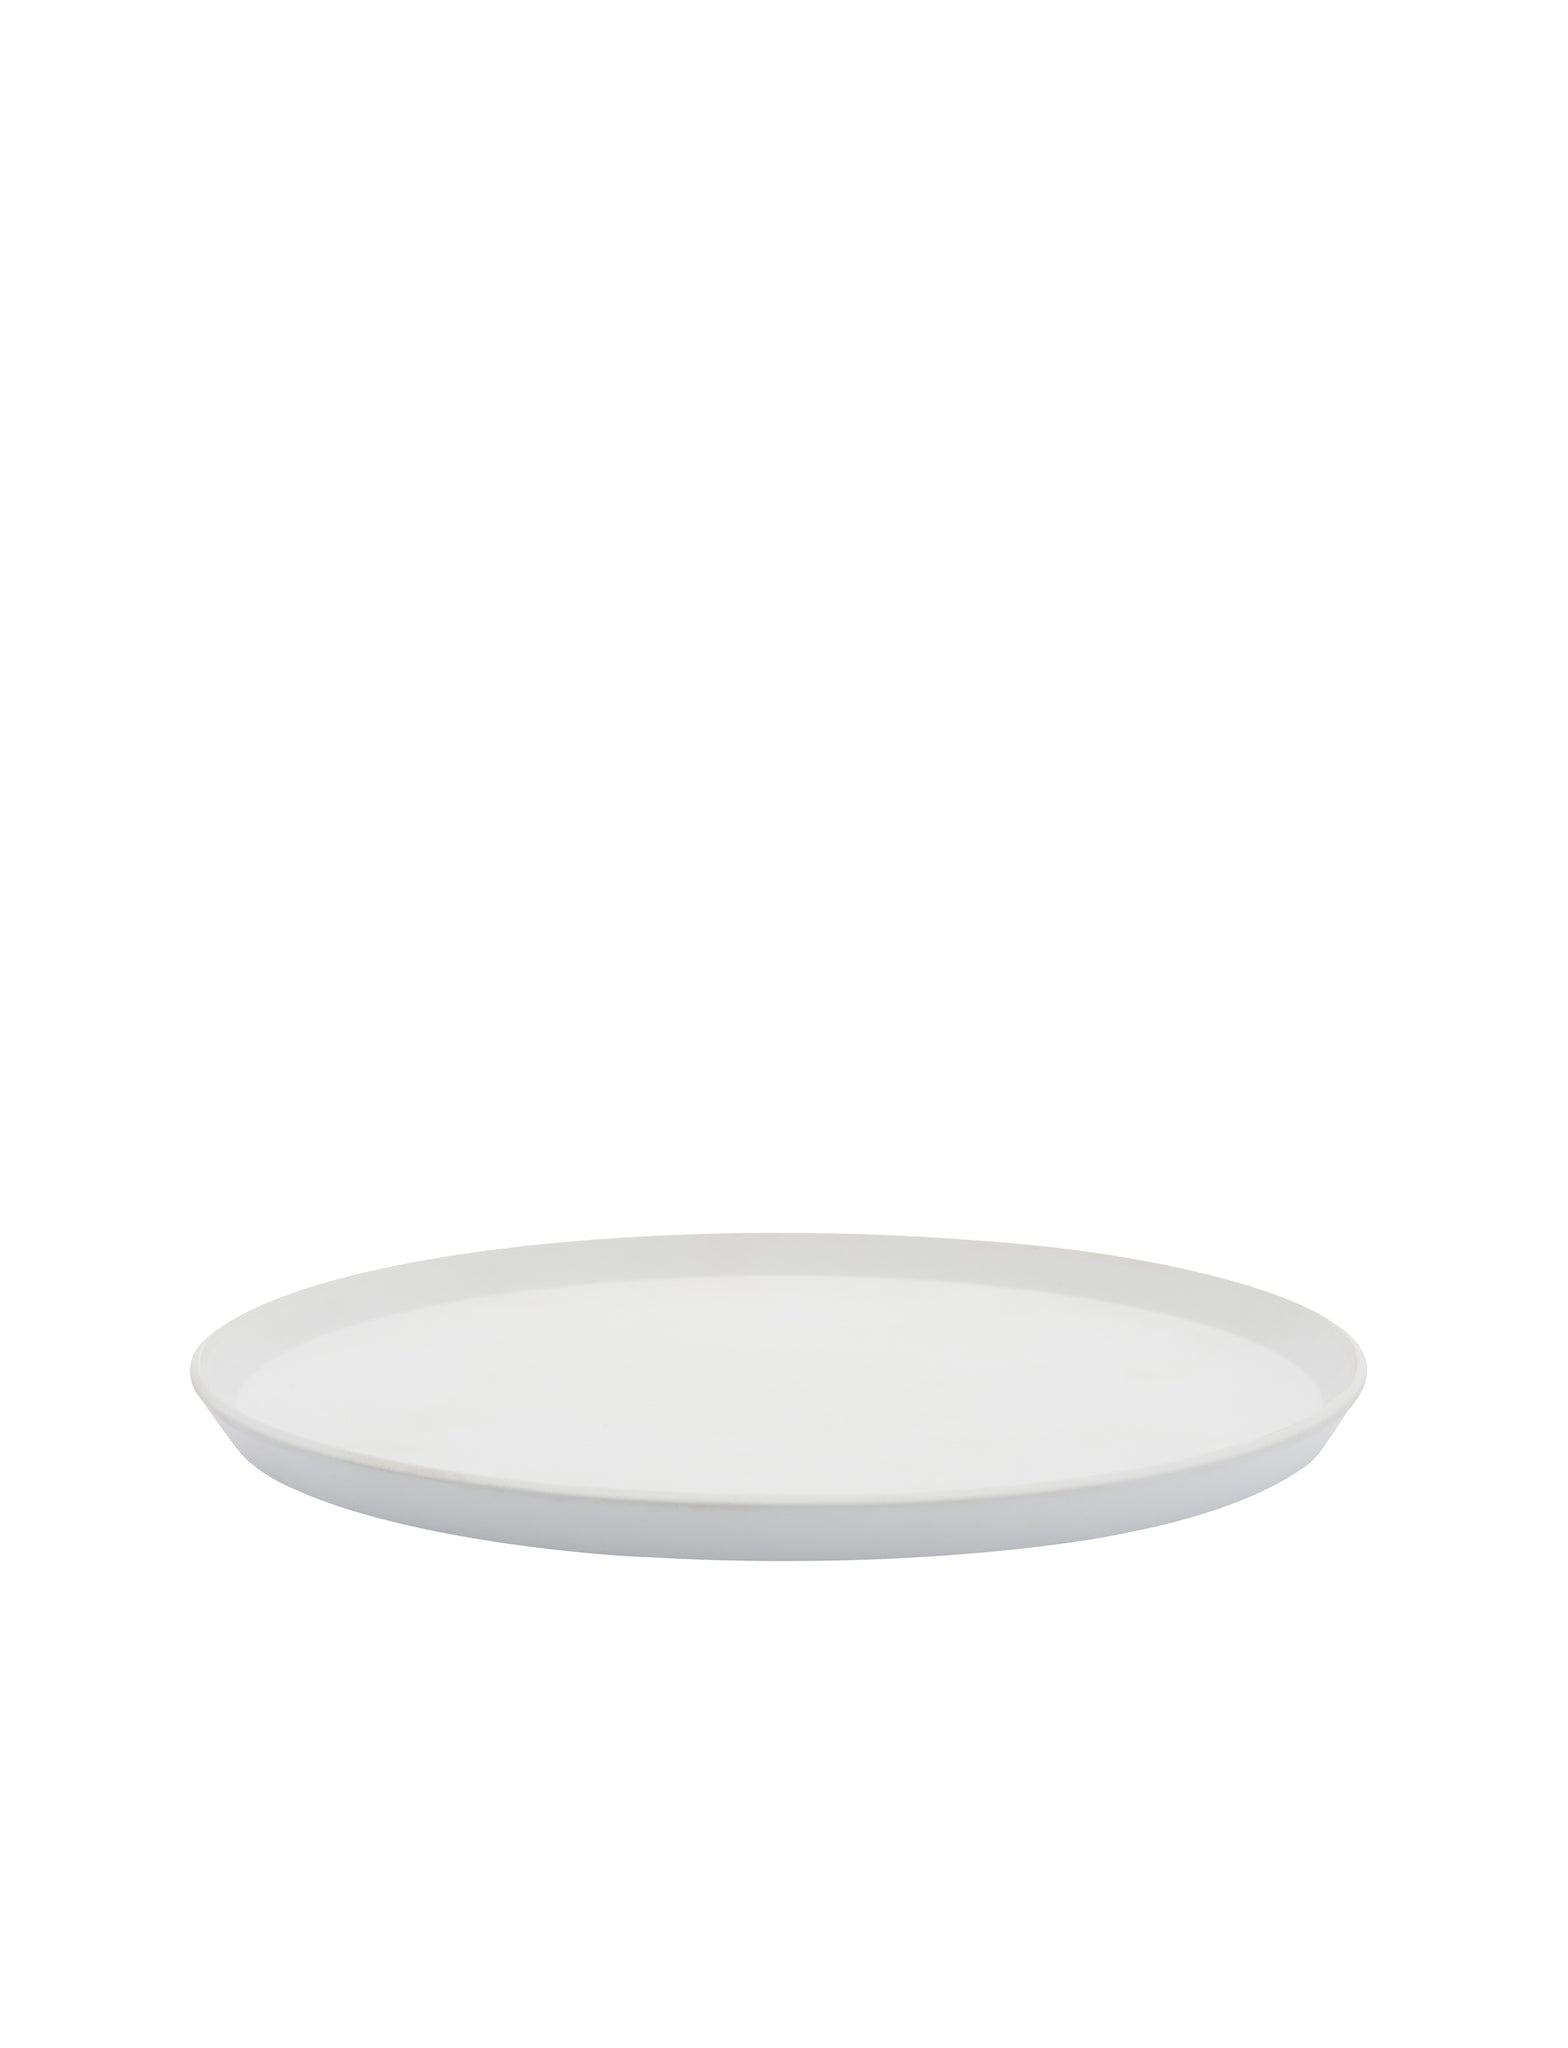 TY Round Plate 240 unglazed grey